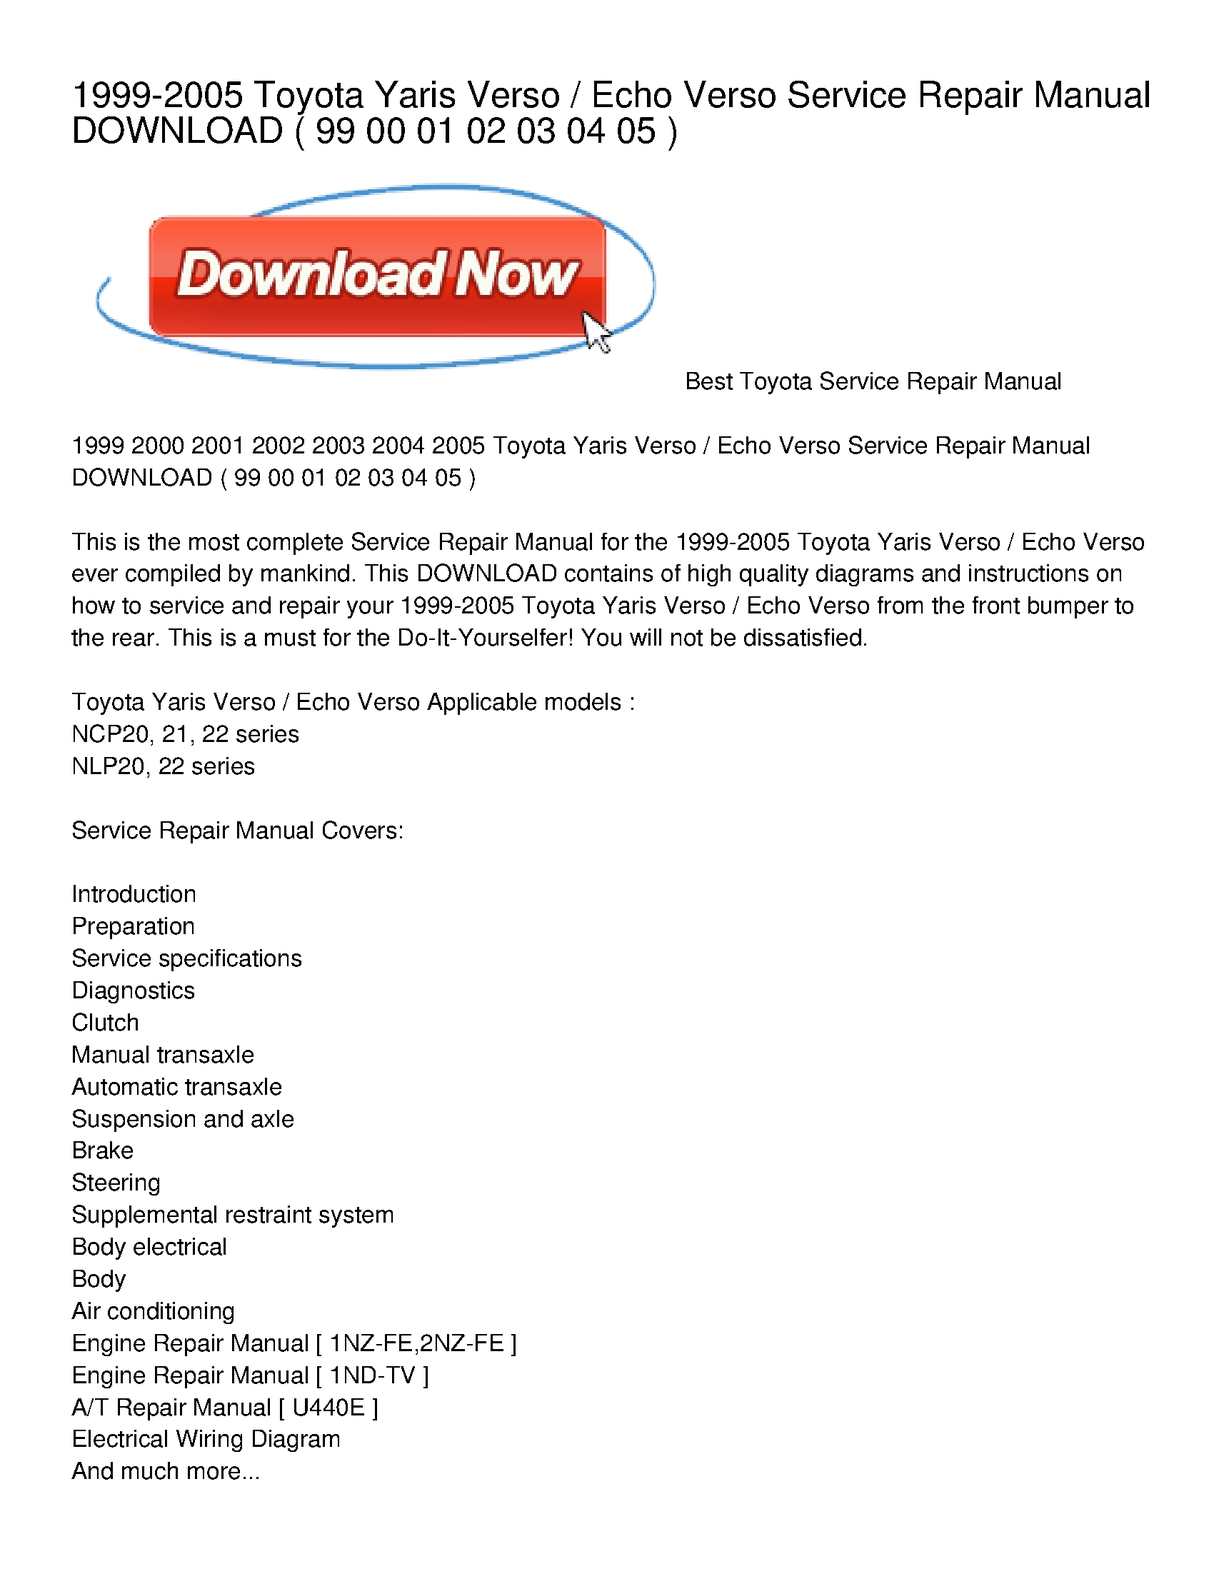 2000 toyota echo repair manual free download